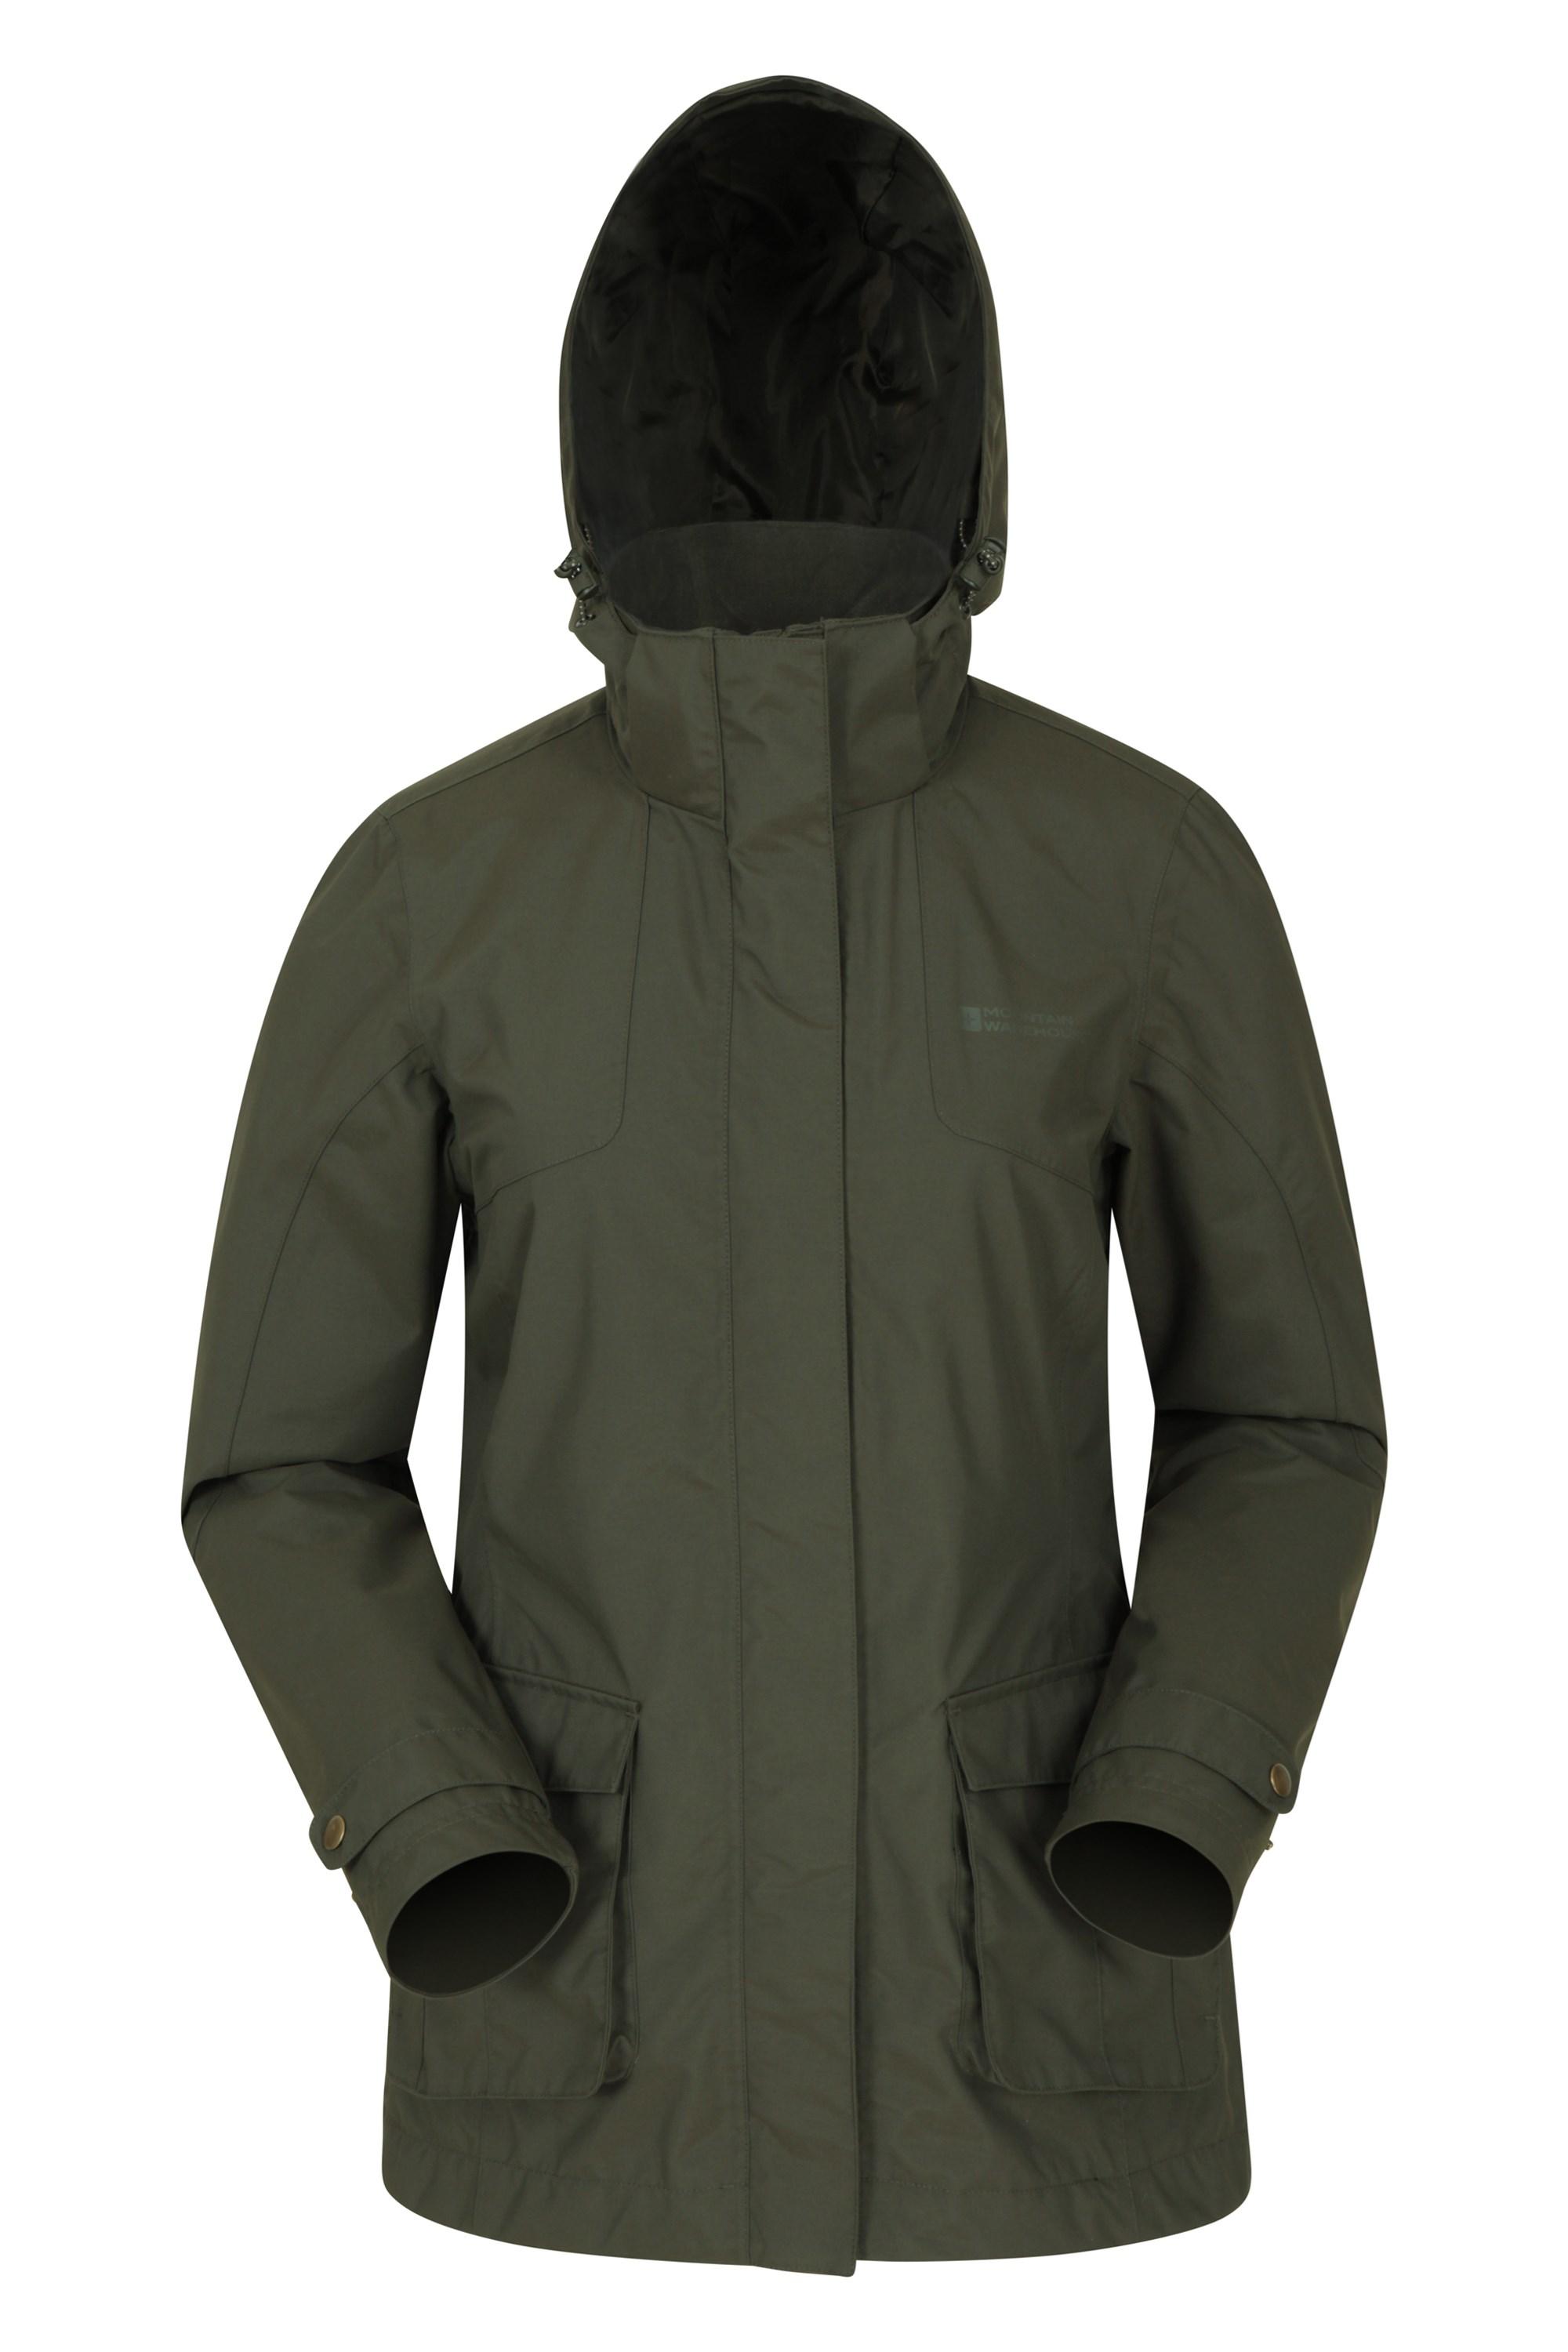 Shetland Womens Waterproof Long Parka Jacket - Green